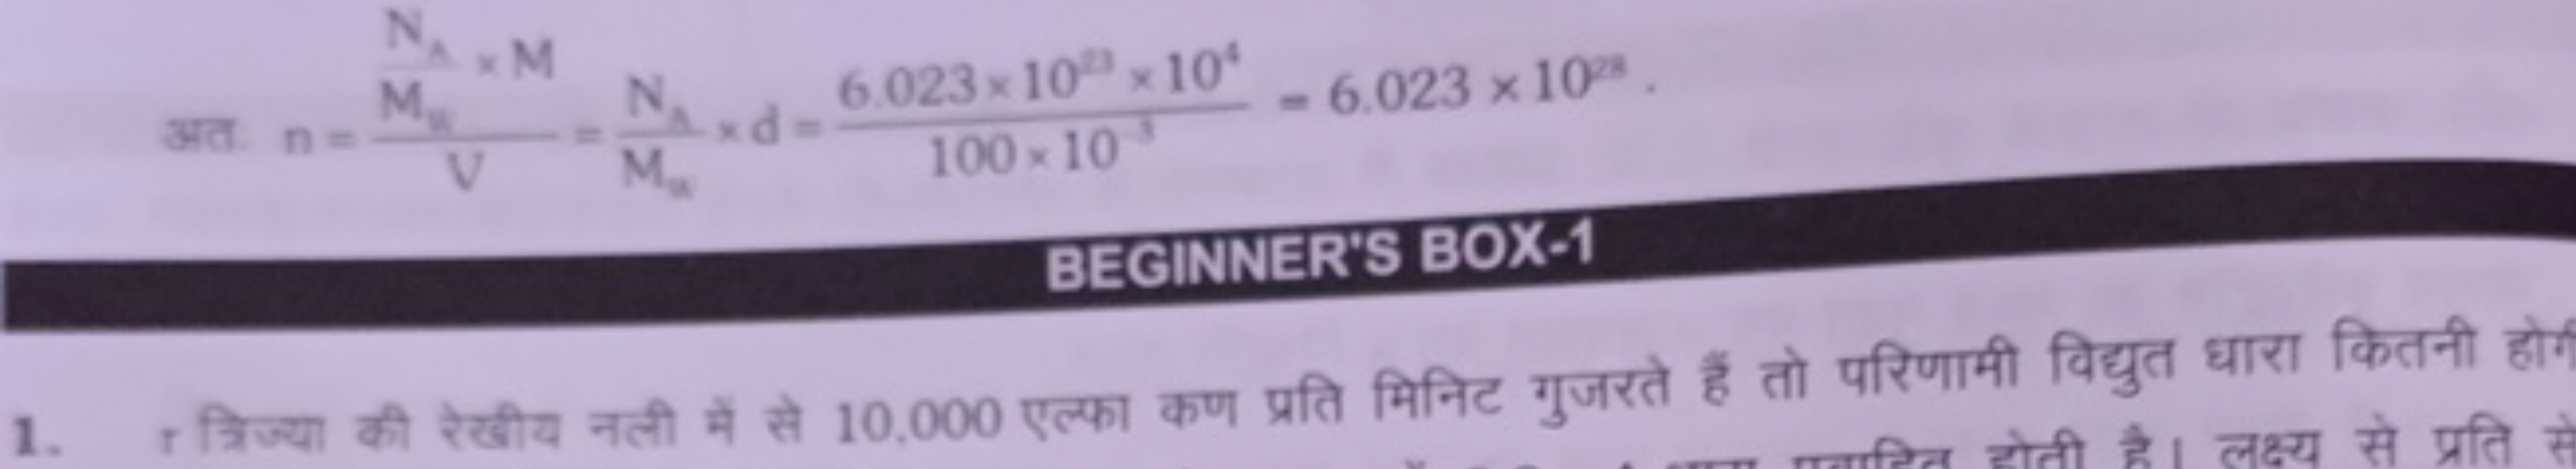 BEGINNER'S BOX-1
1. r त्रिज्या की रेखीय नली में से 10,000 एल्फा कण प्र